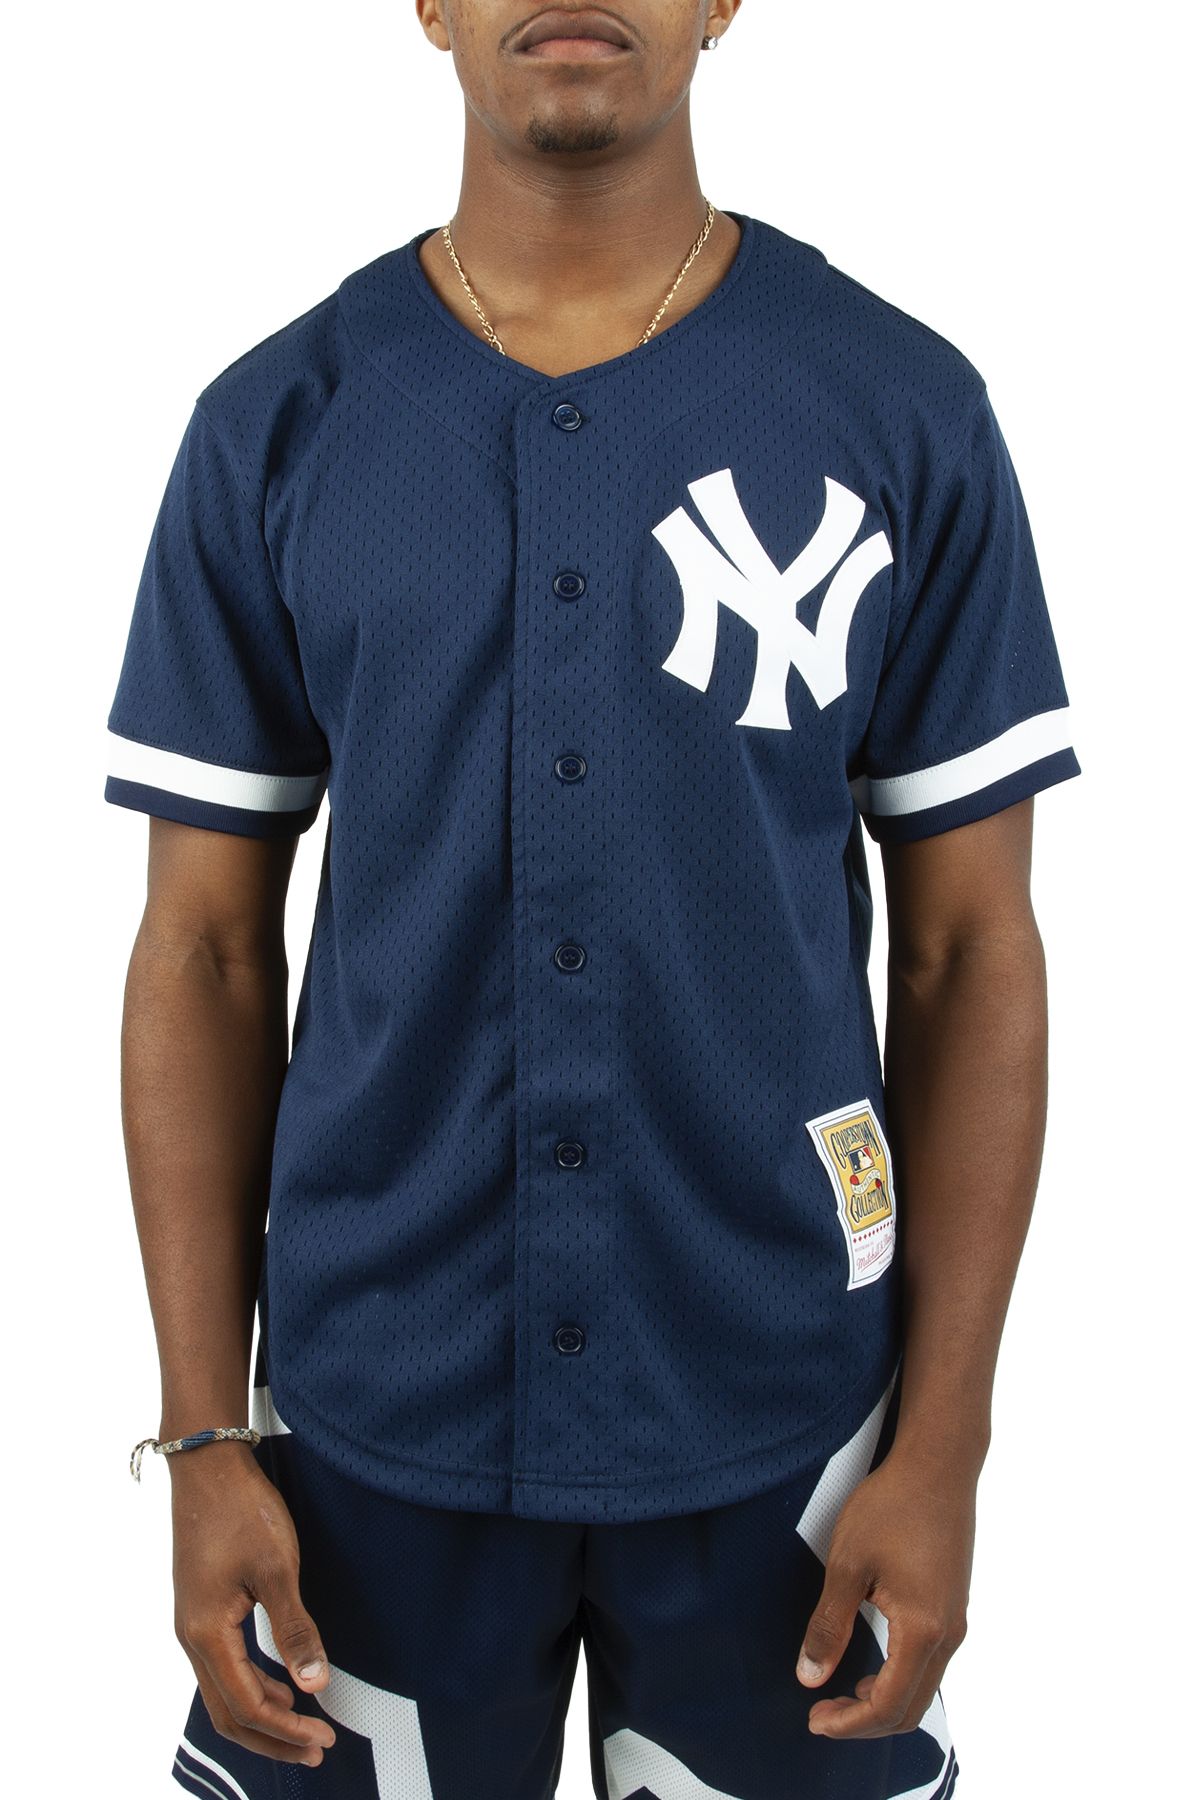 Men's New York Yankees Reggie Jackson Mitchell & Ness Navy